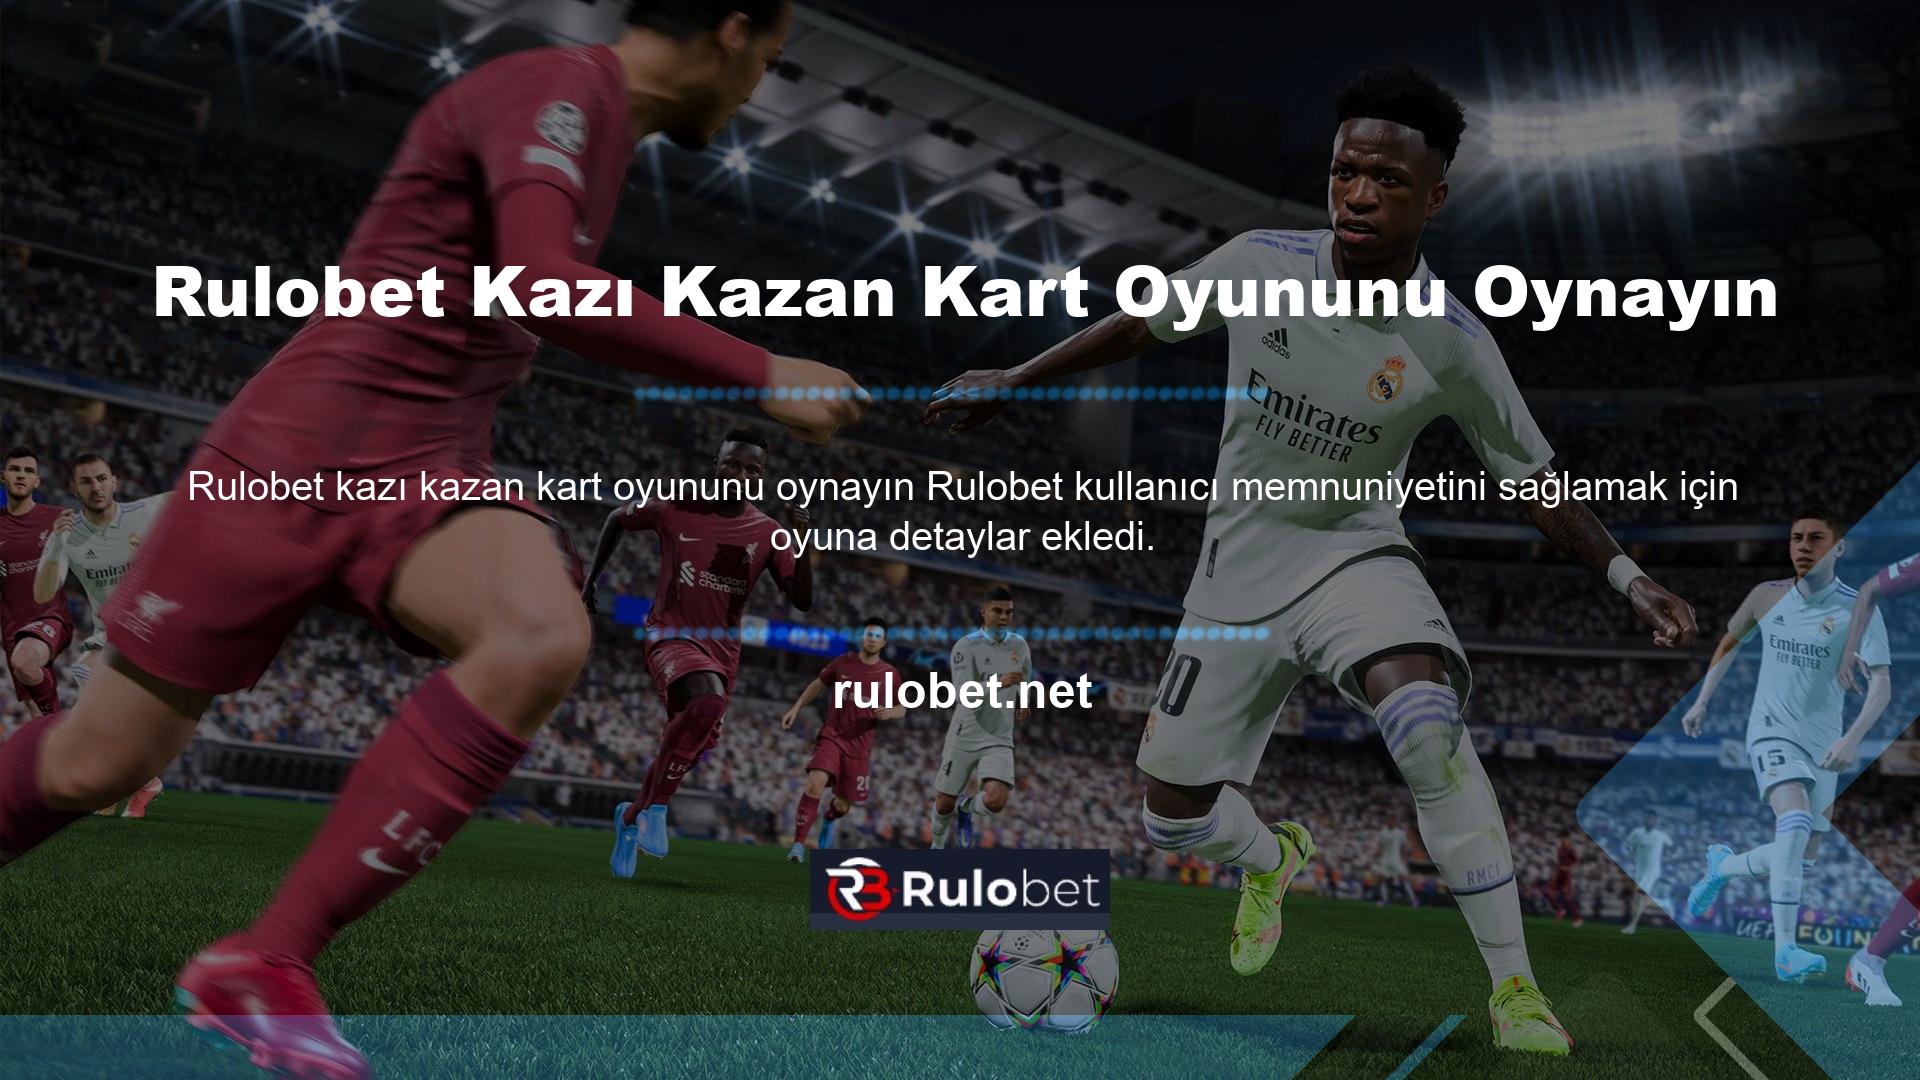 Rulobet birçok oyunu Kazı Kazan adı altında kullanıcılarına sunmaktadır